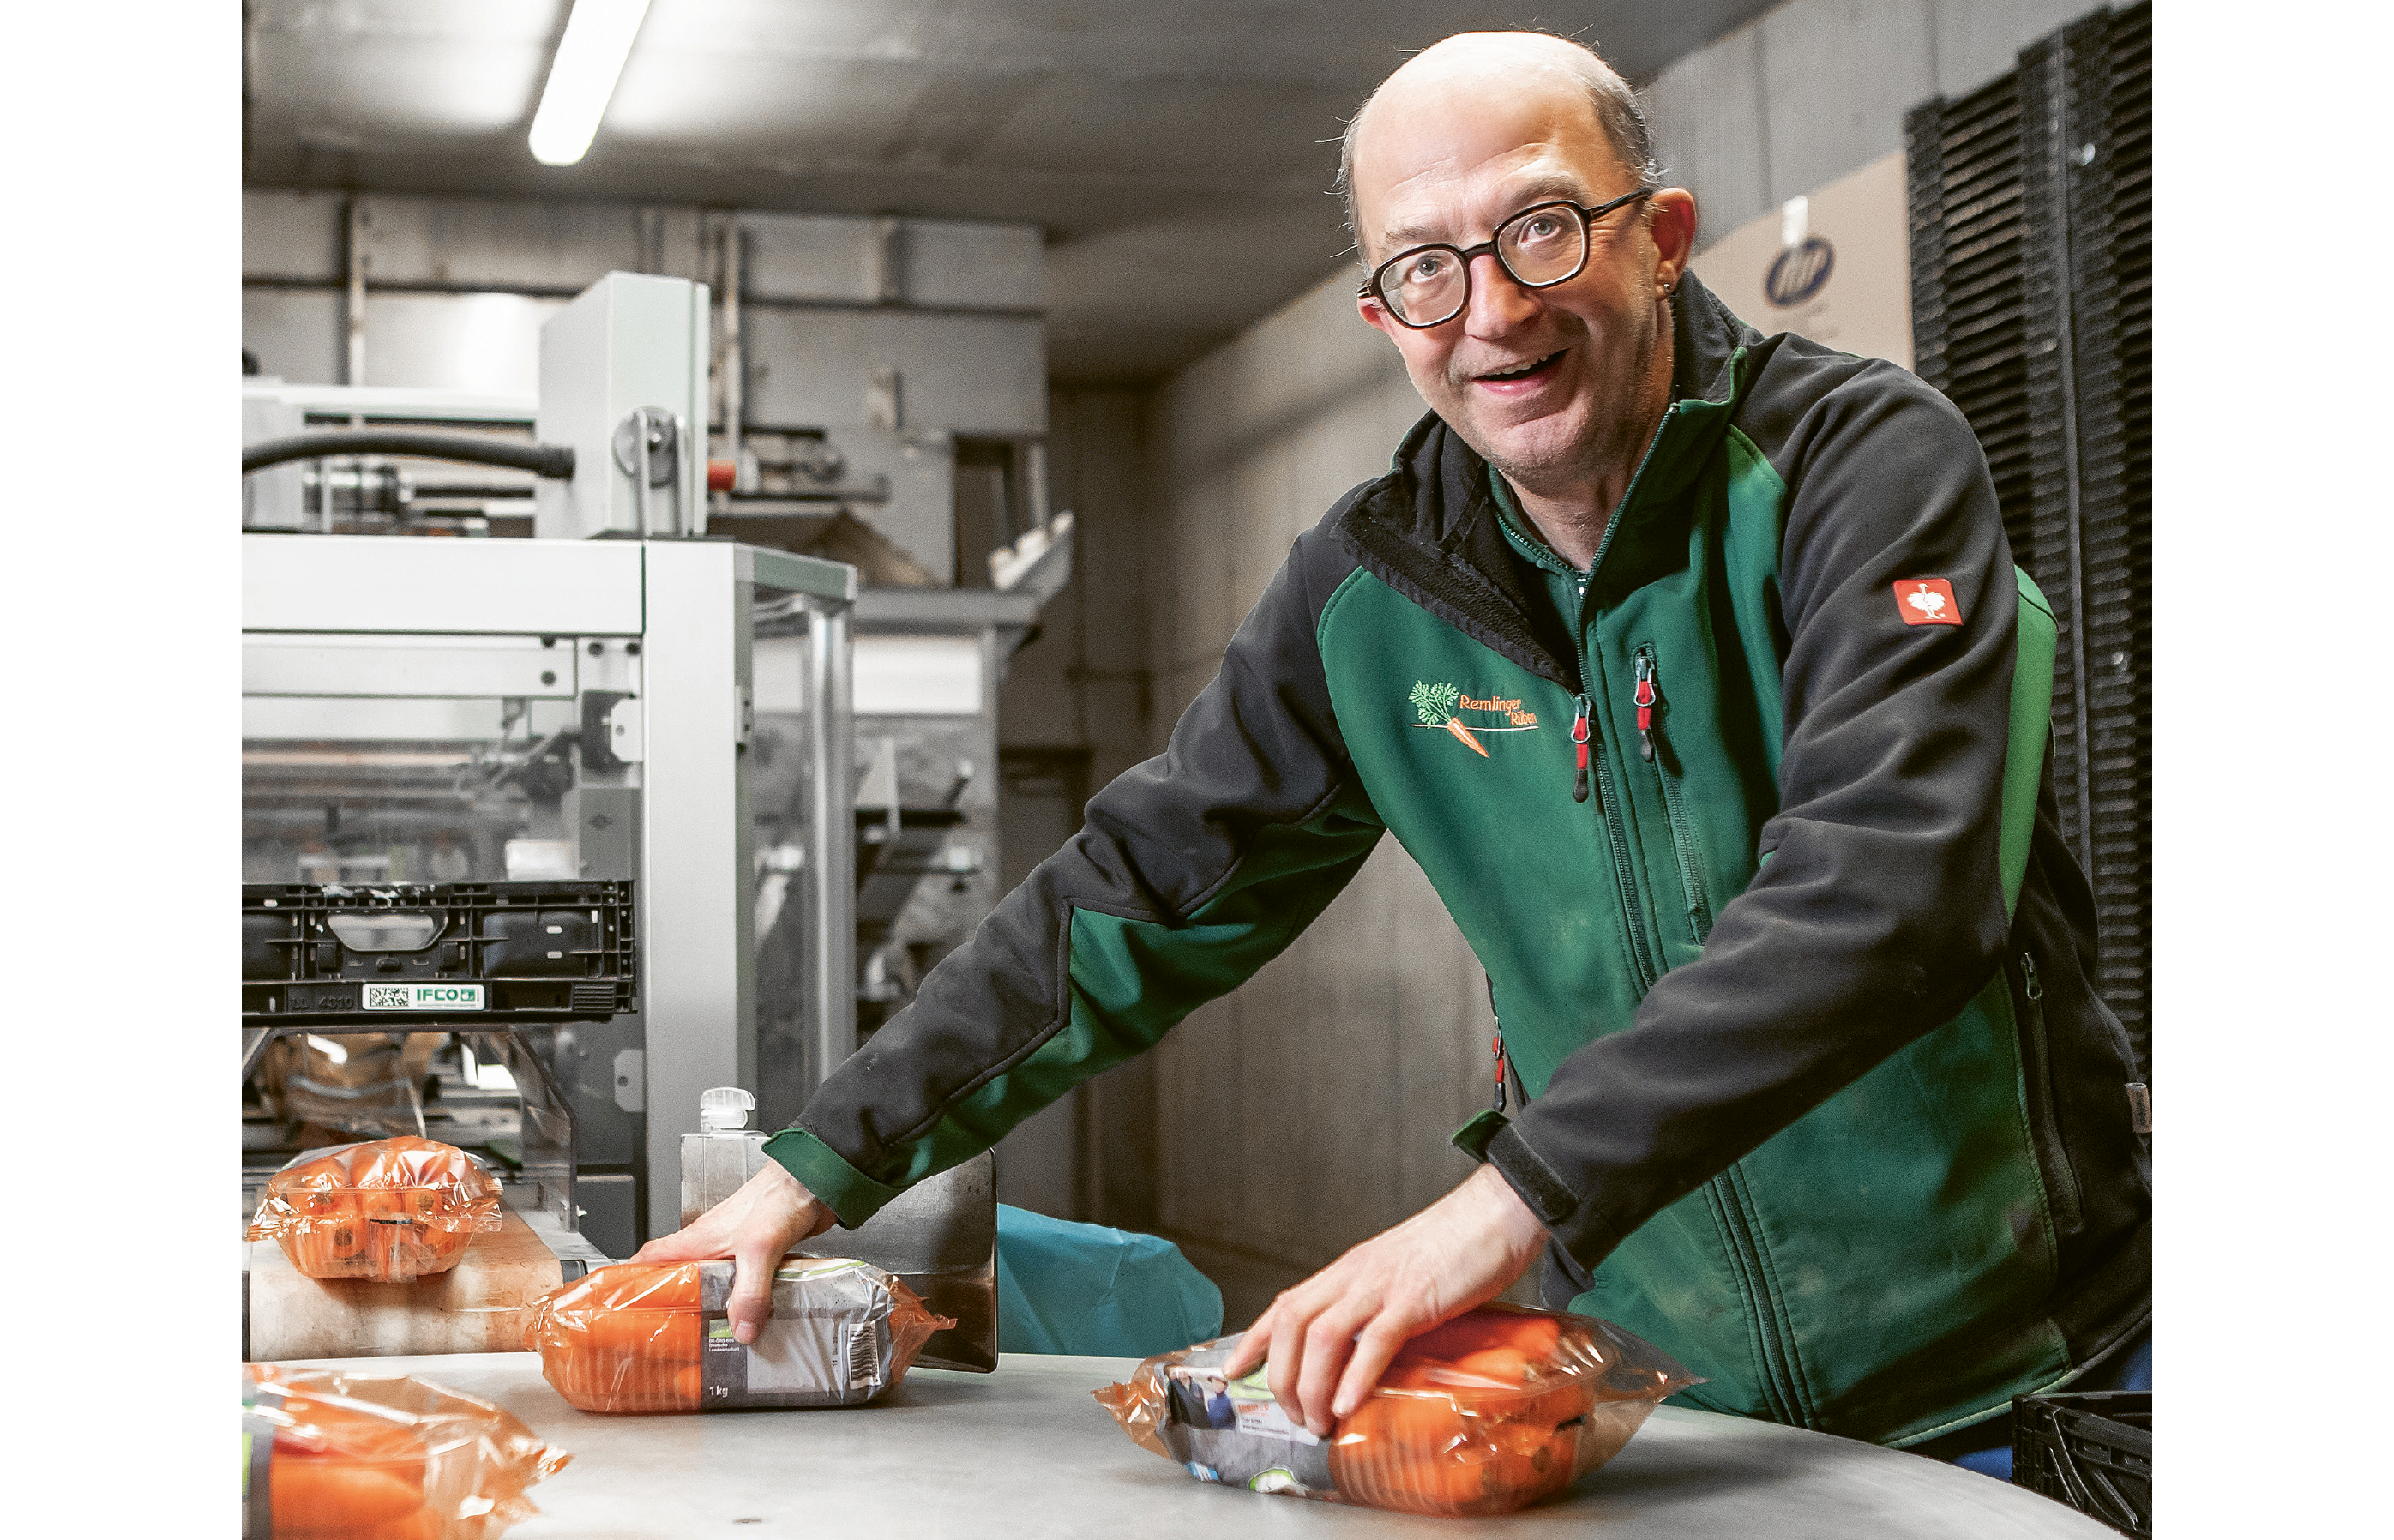 Michael Riethmann bei seiner Arbeit auf dem Rübenhof in Remlingen. Er hat zwei verpackte Schalen Karotten in der Hand, die er aus einer Maschine in eine Kiste verlädt. Er lacht in die Kamera.